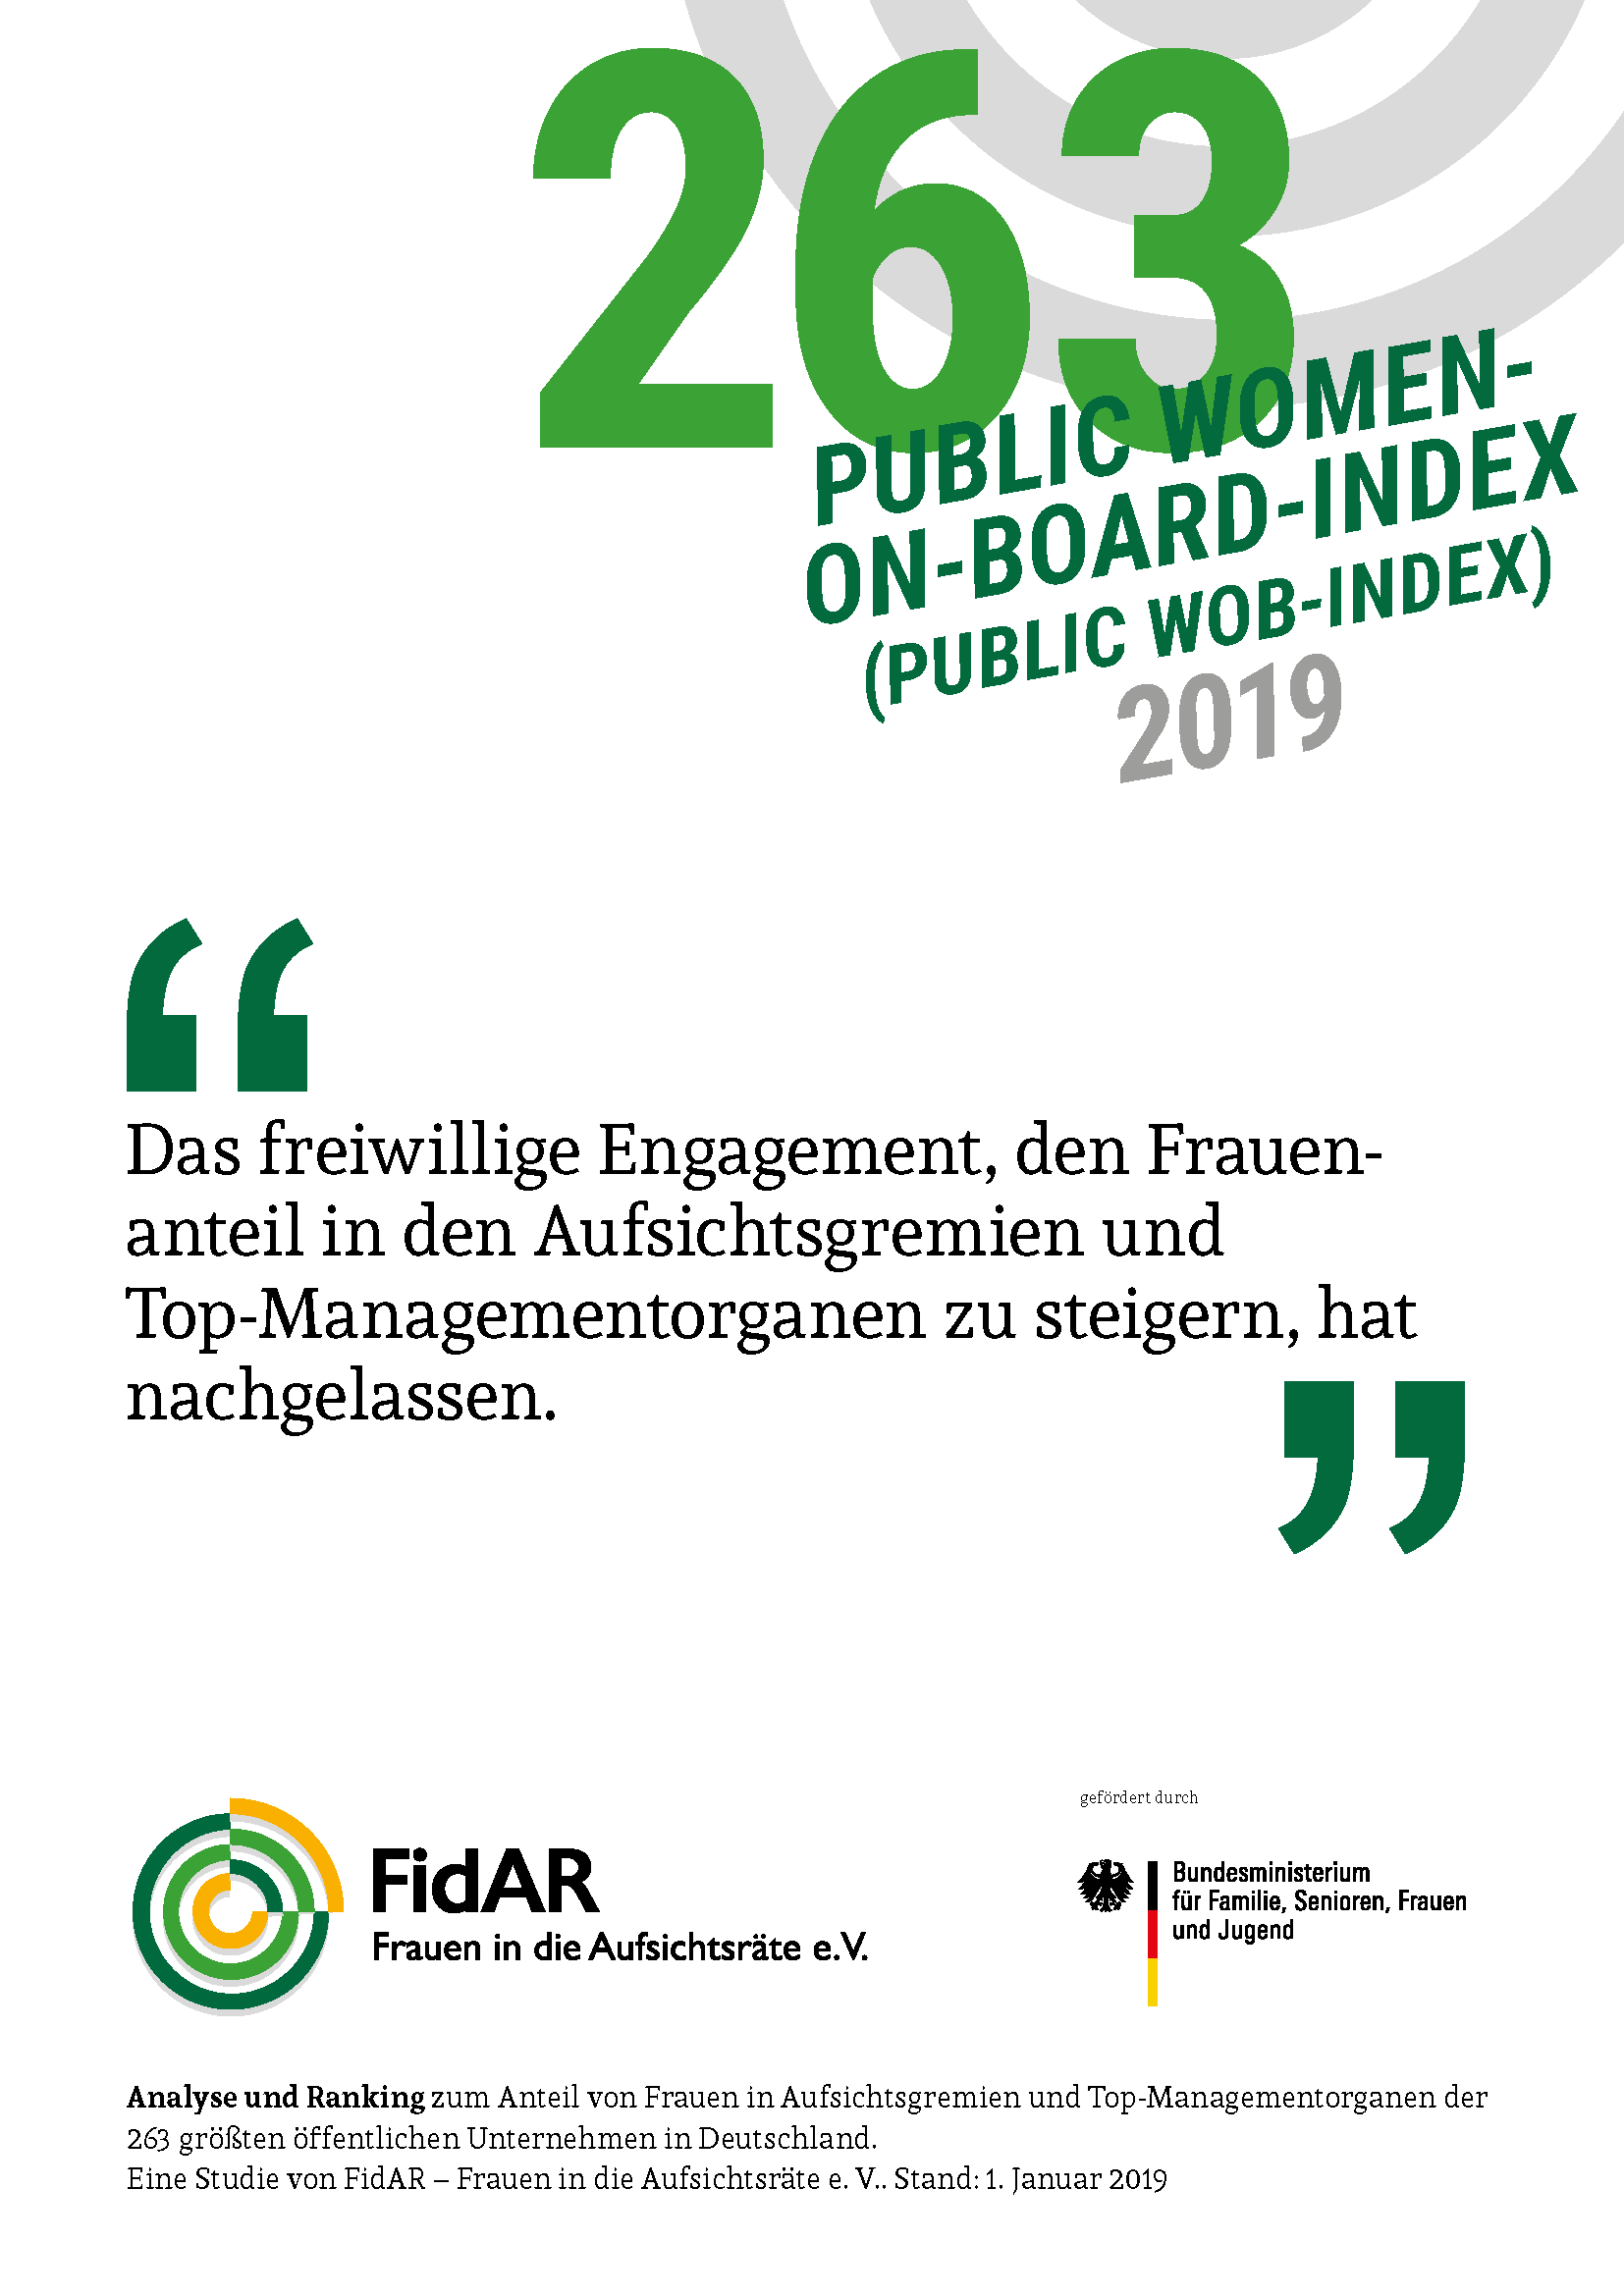 Public WoB-Index 2019